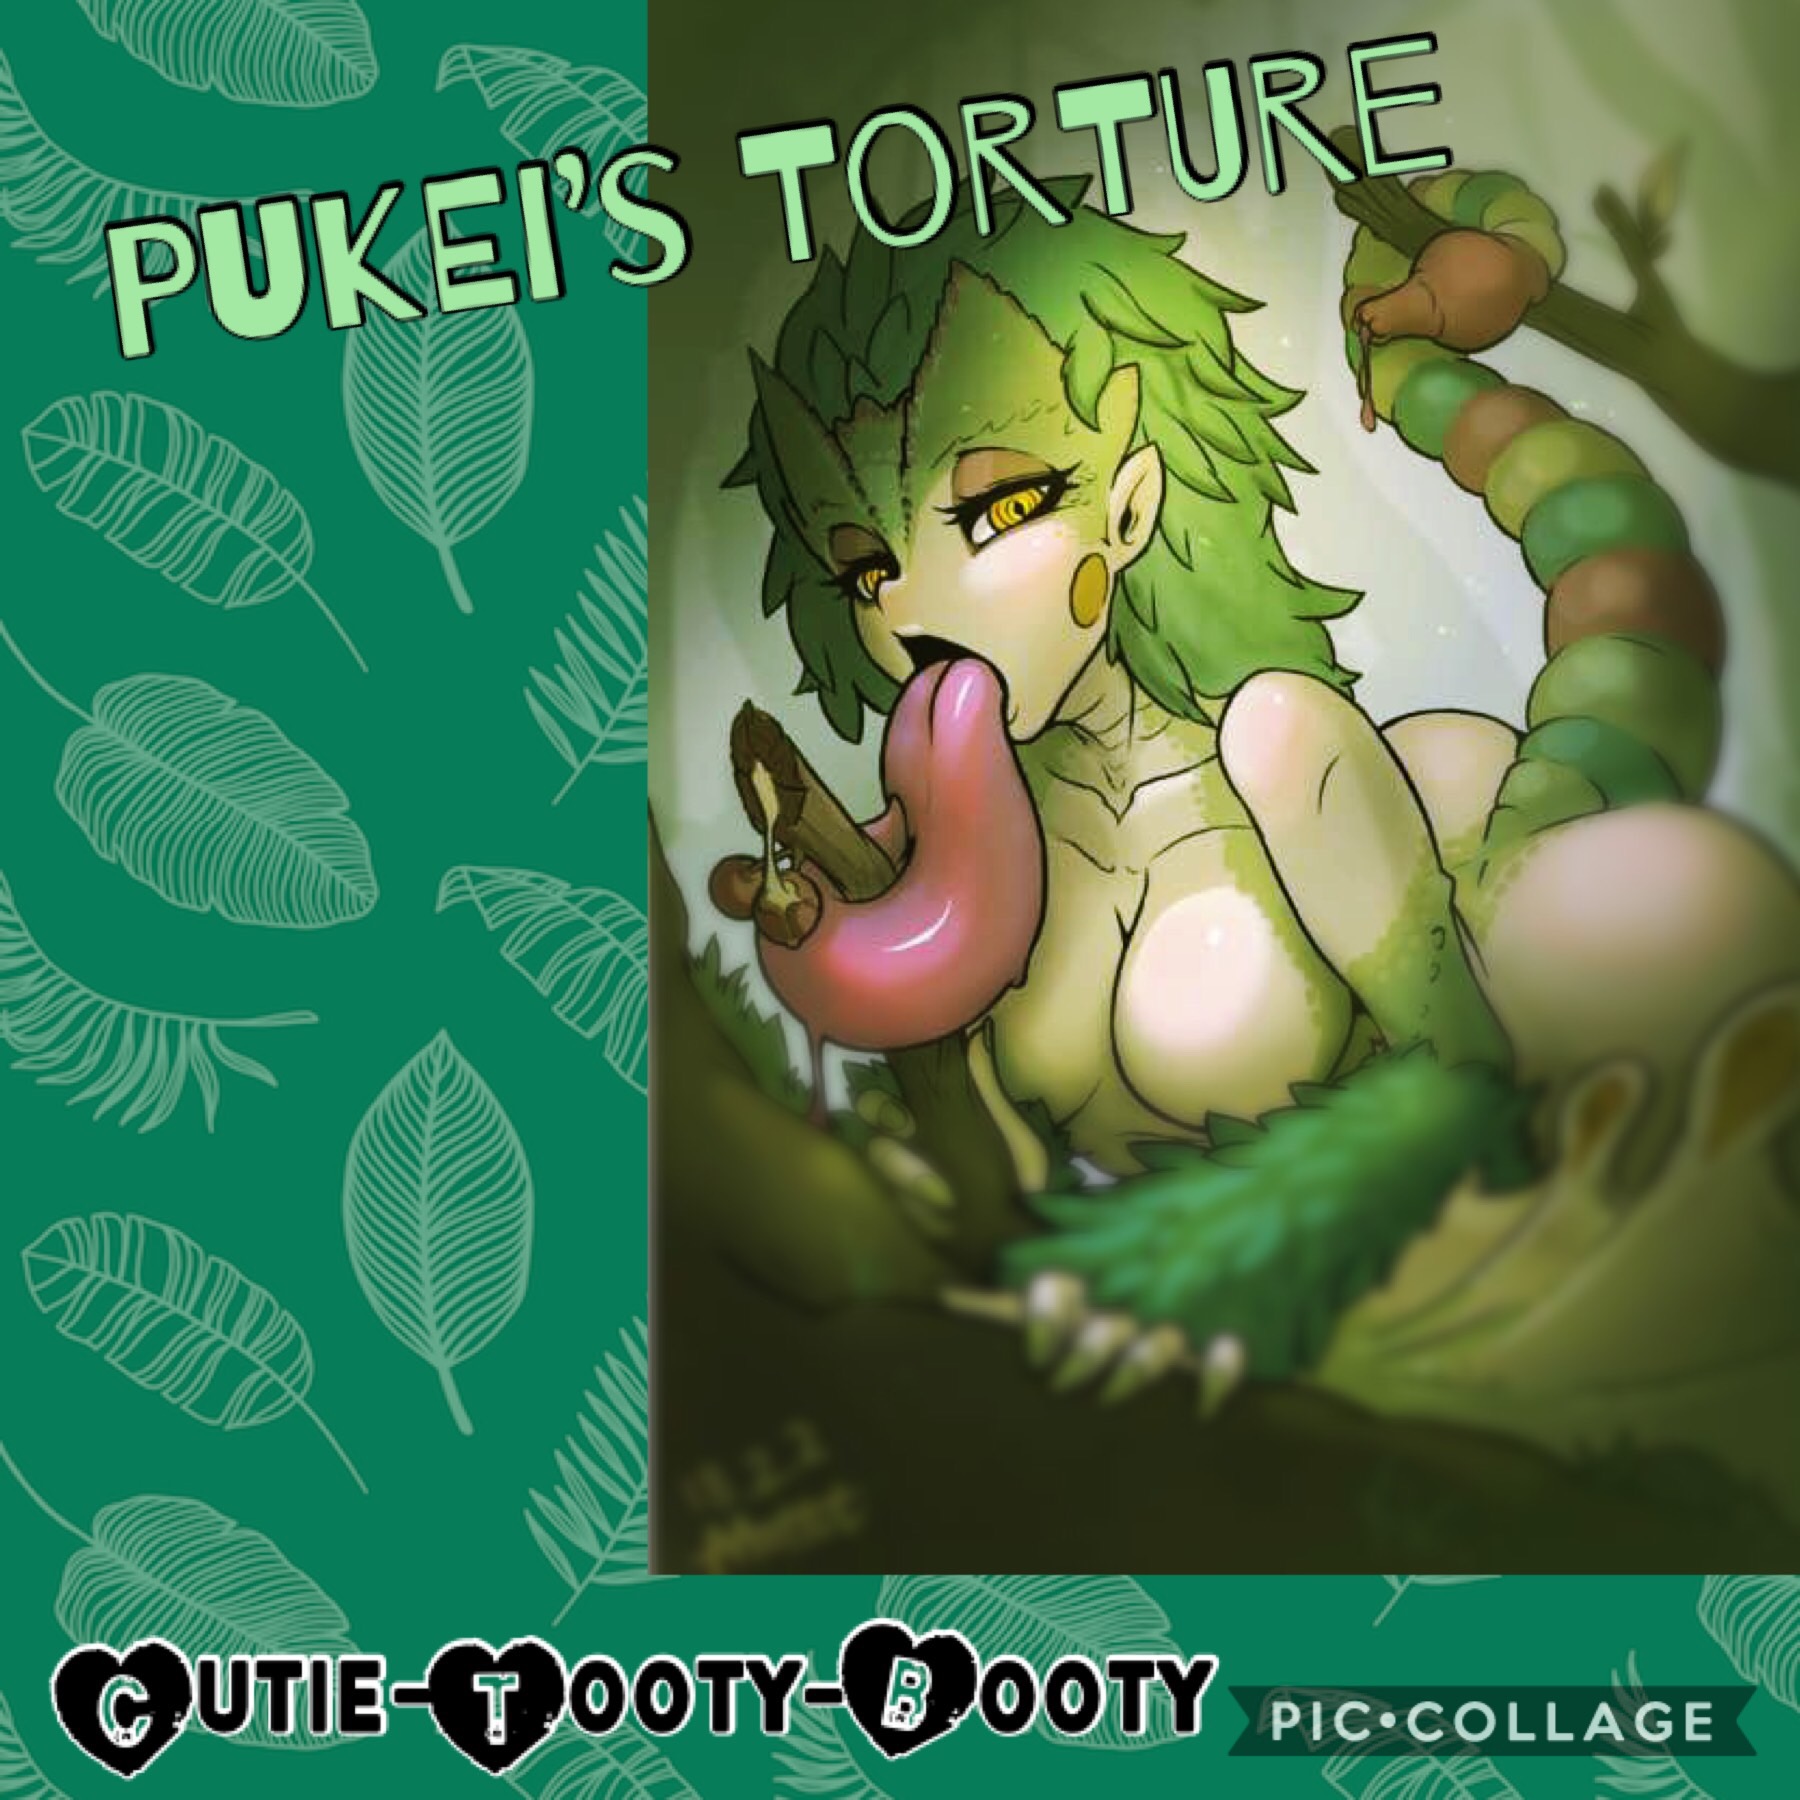 Pukei's Torture